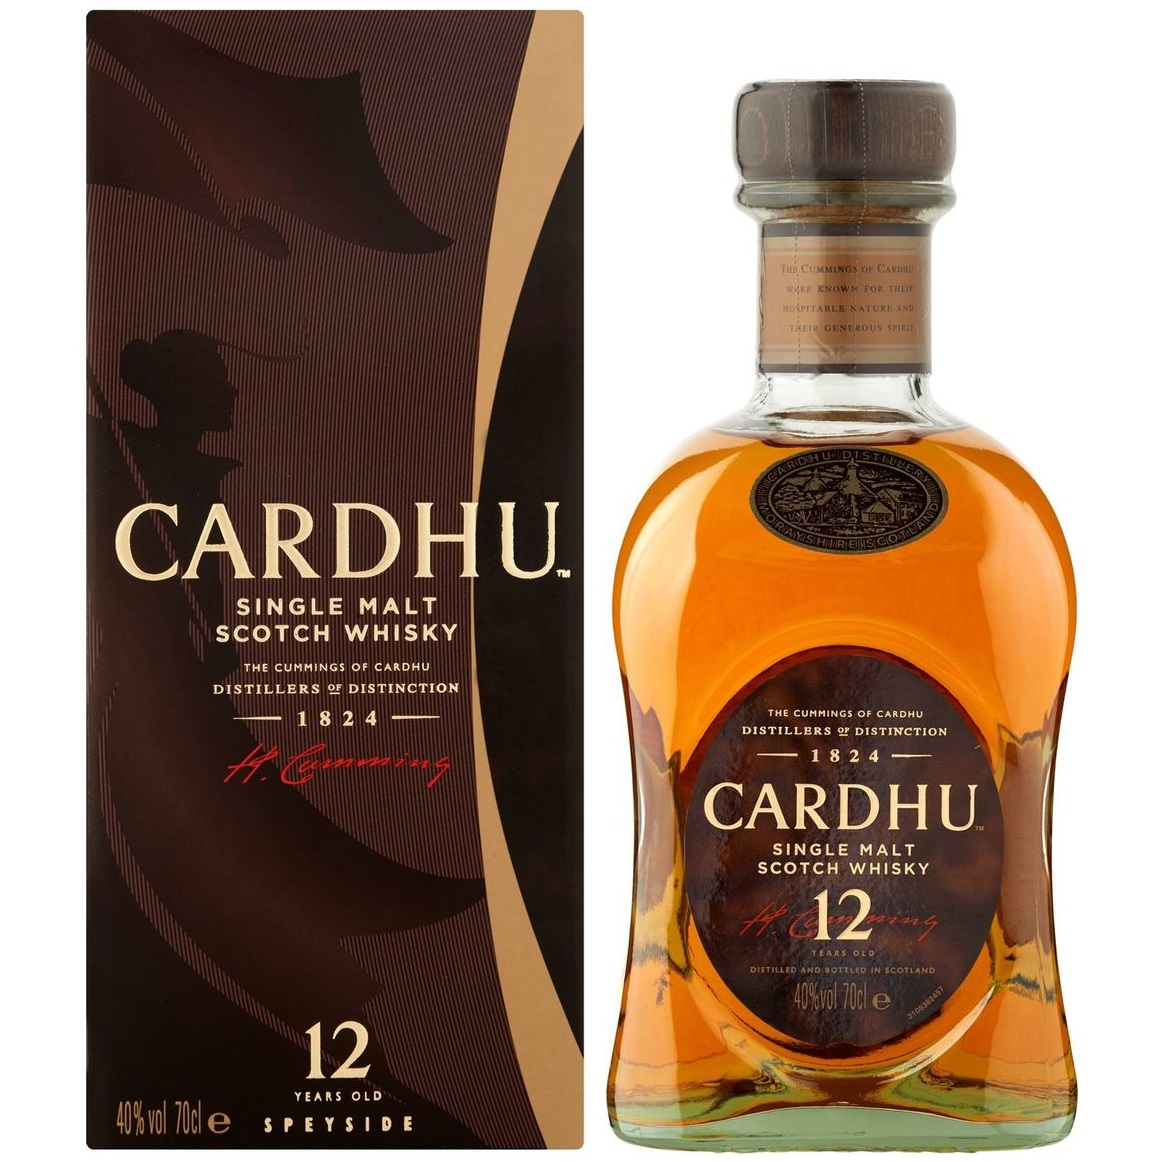 Whisky Cardhu 12 ans d'age - Achat / Vente de Cocktail, alcool et